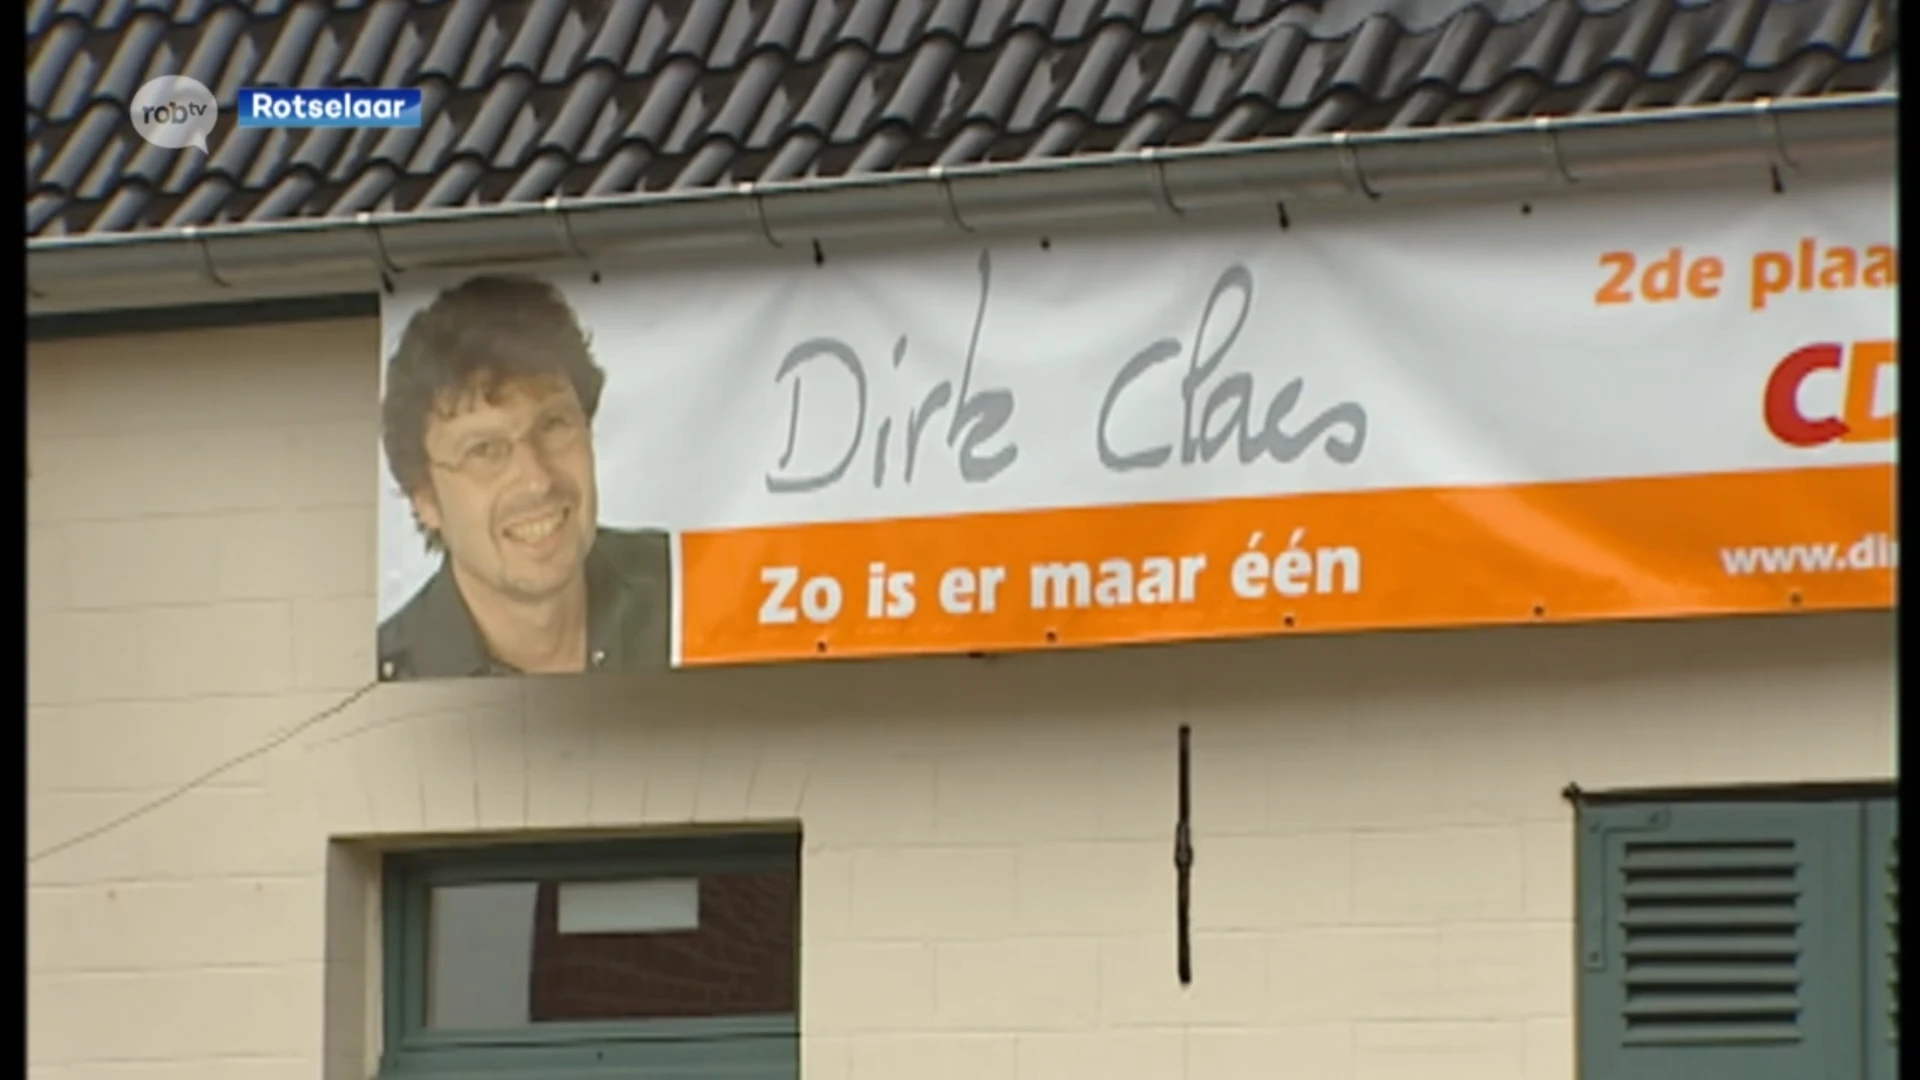 Na 33 jaar neemt voormalig burgemeester van Rotselaar Dirk Claes afscheid van de politiek